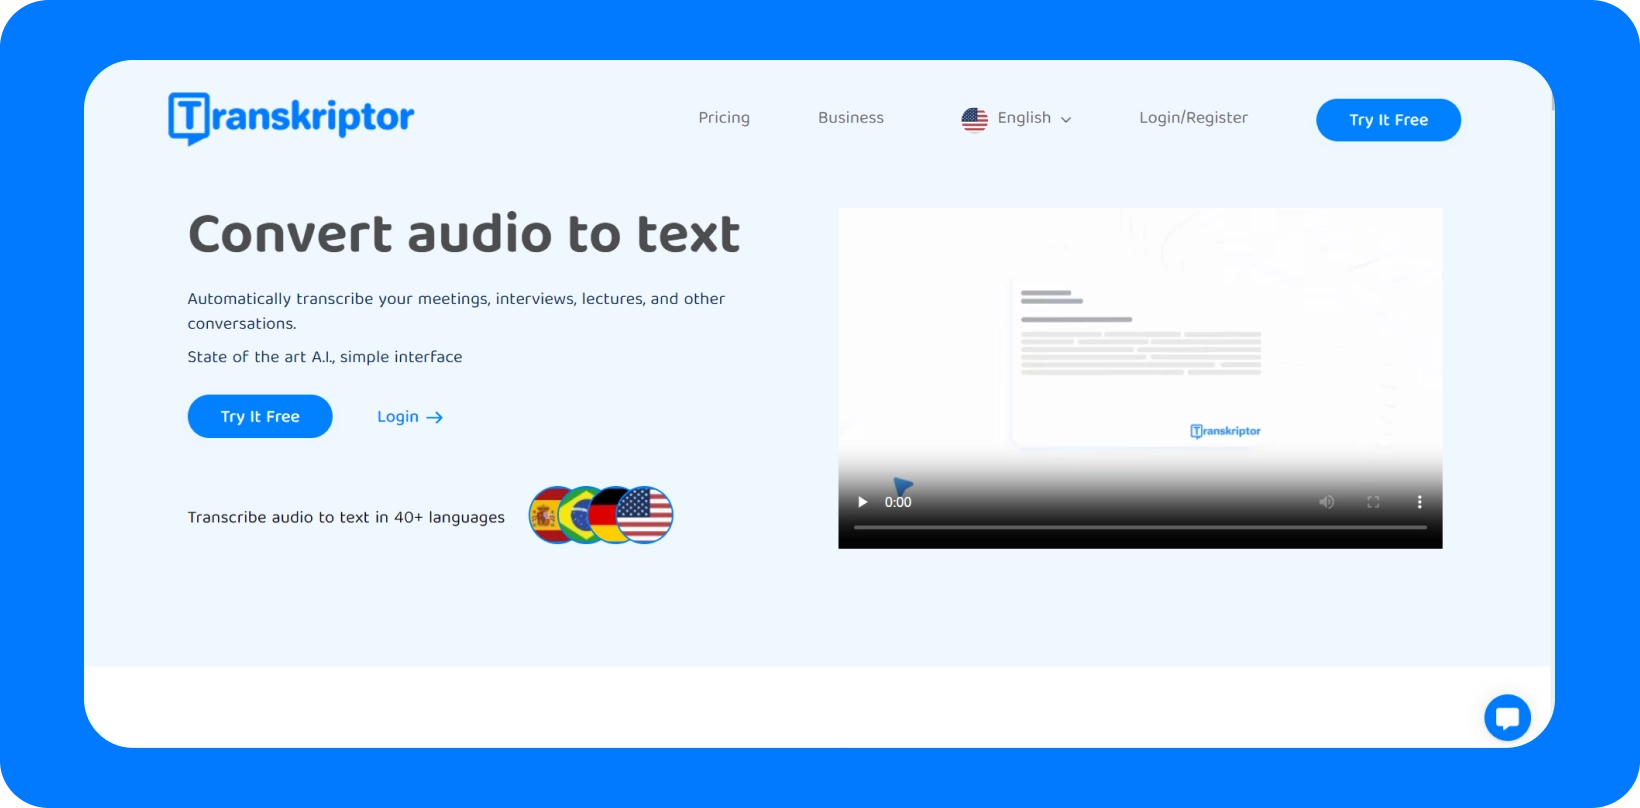 Transkriptor gränssnitt som visar tjänsten "Konvertera ljud till text" med stöd för flera språk.